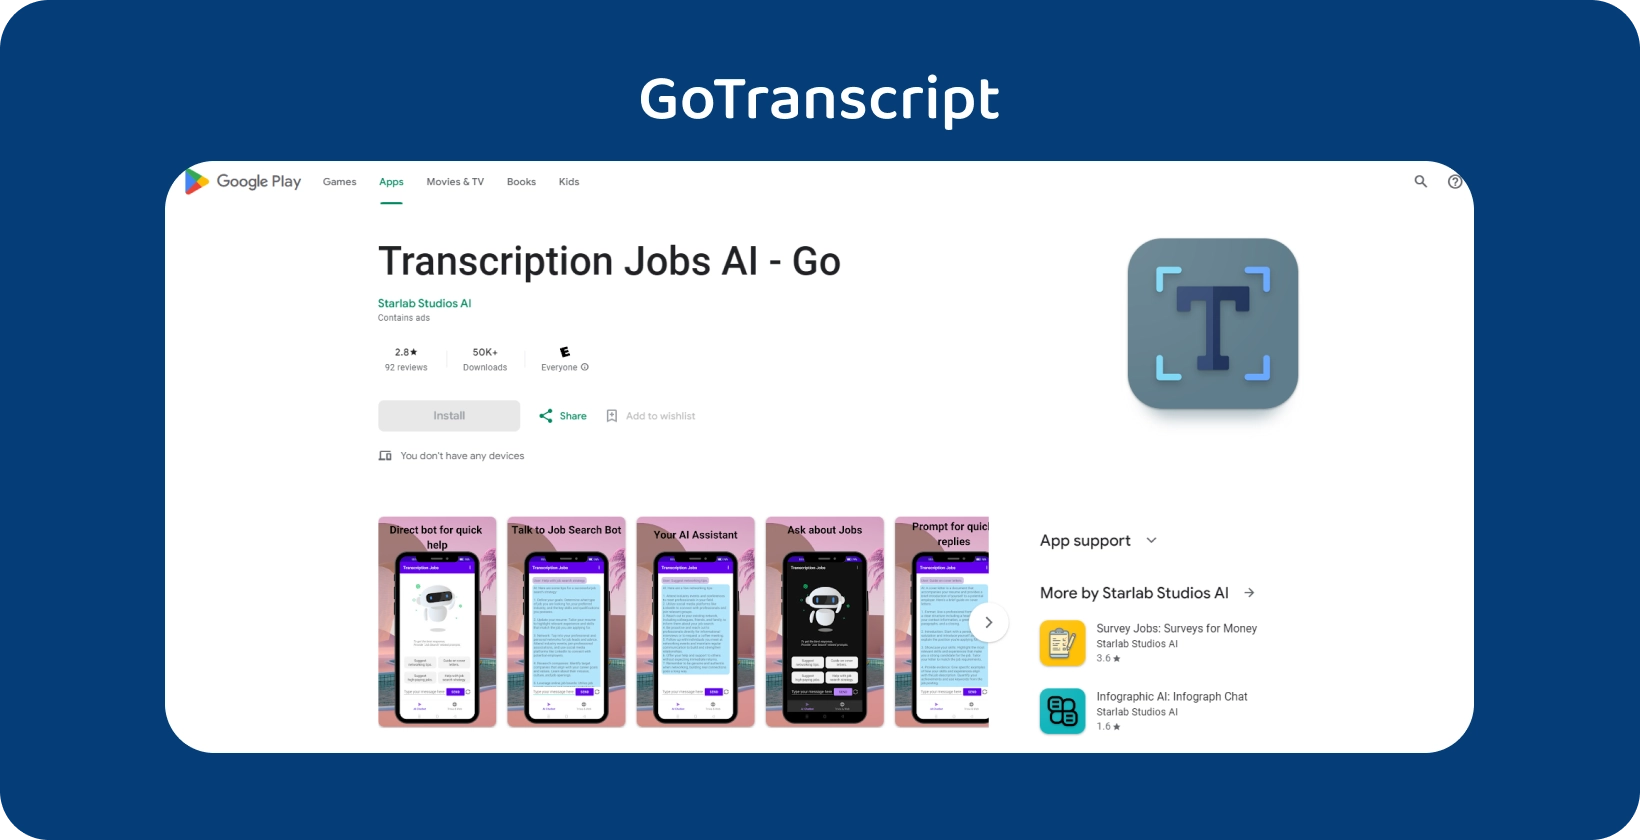 GoTranscript alkalmazás a Google Play-on, amelyet az átírási feladatok intuitív mobil felülettel történő kezelésére terveztek.